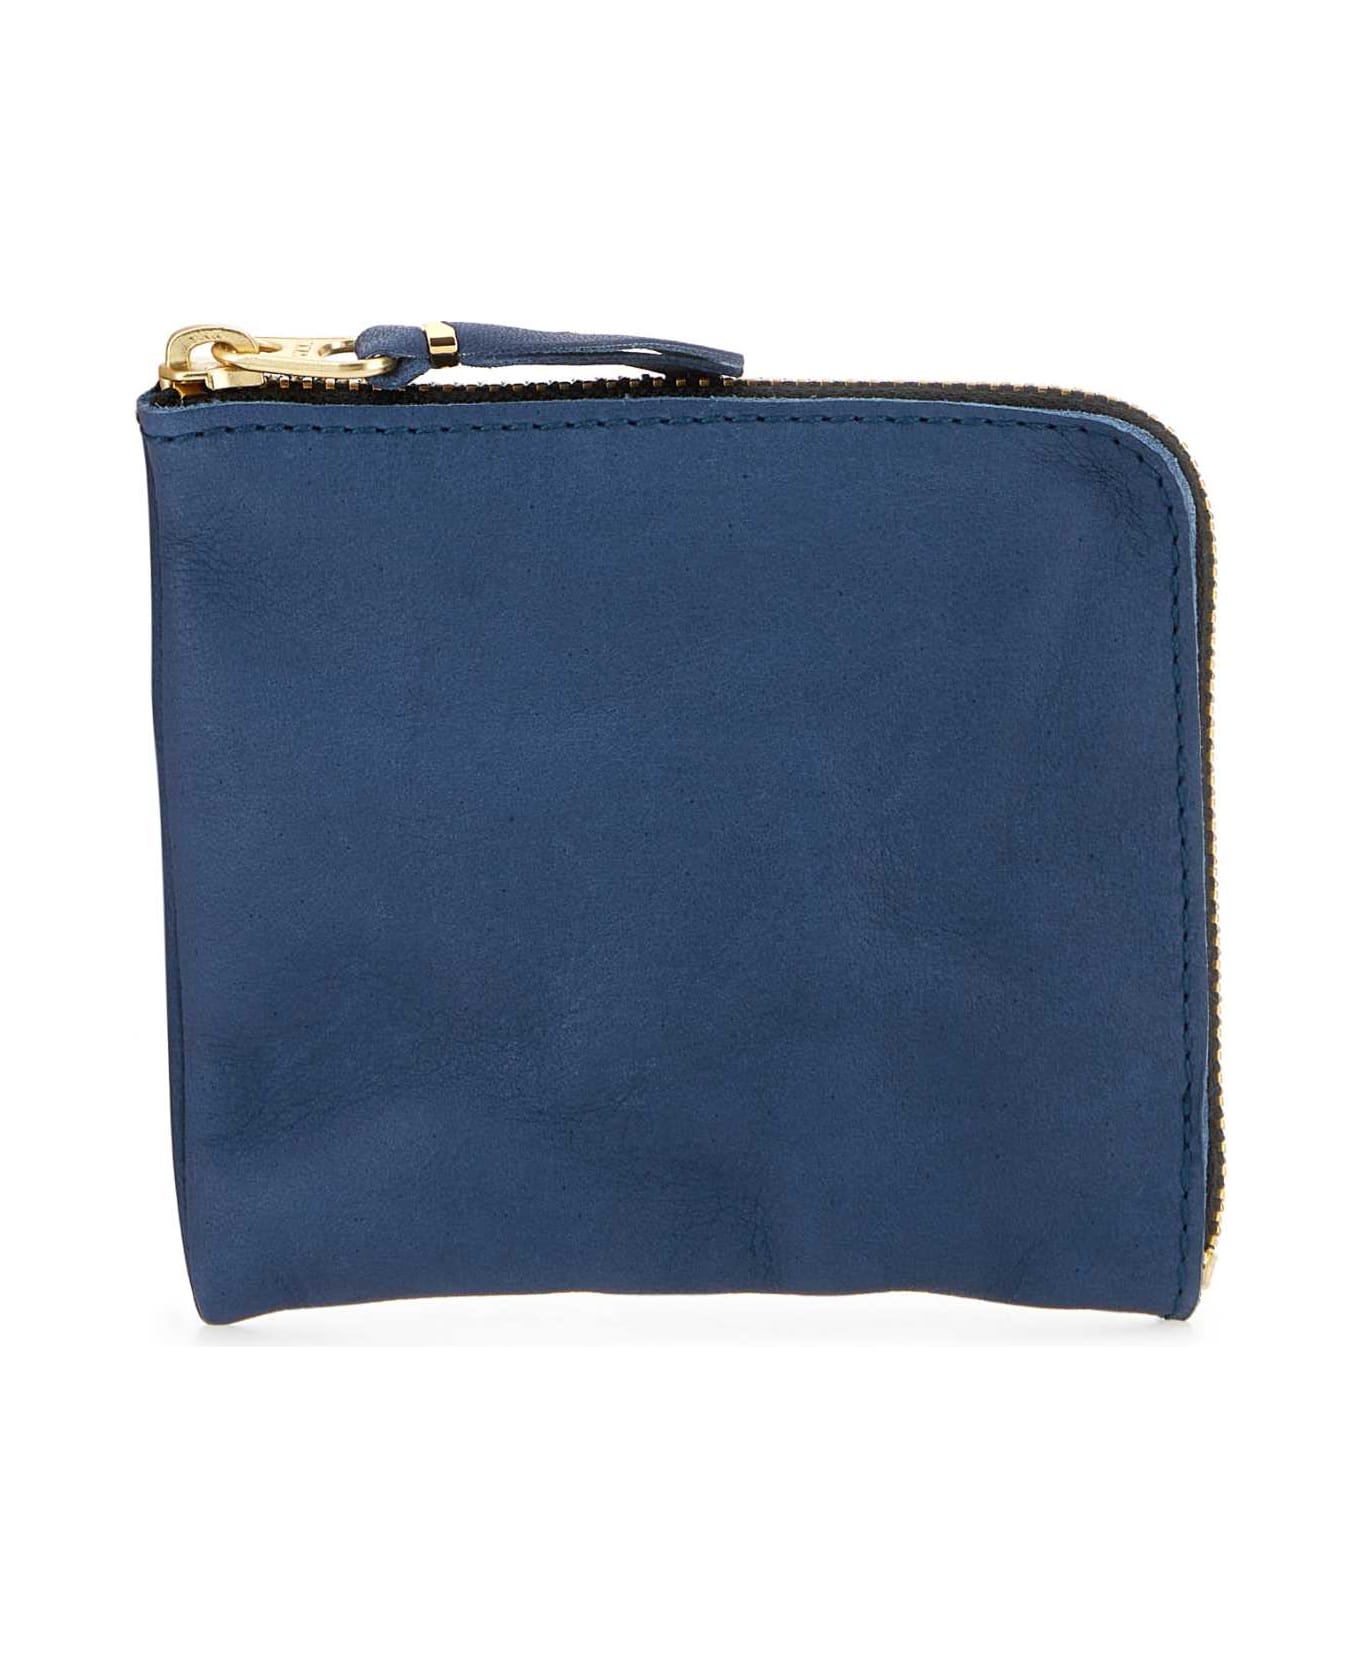 Comme des Garçons Blue Leather Wallet - NAVY 財布